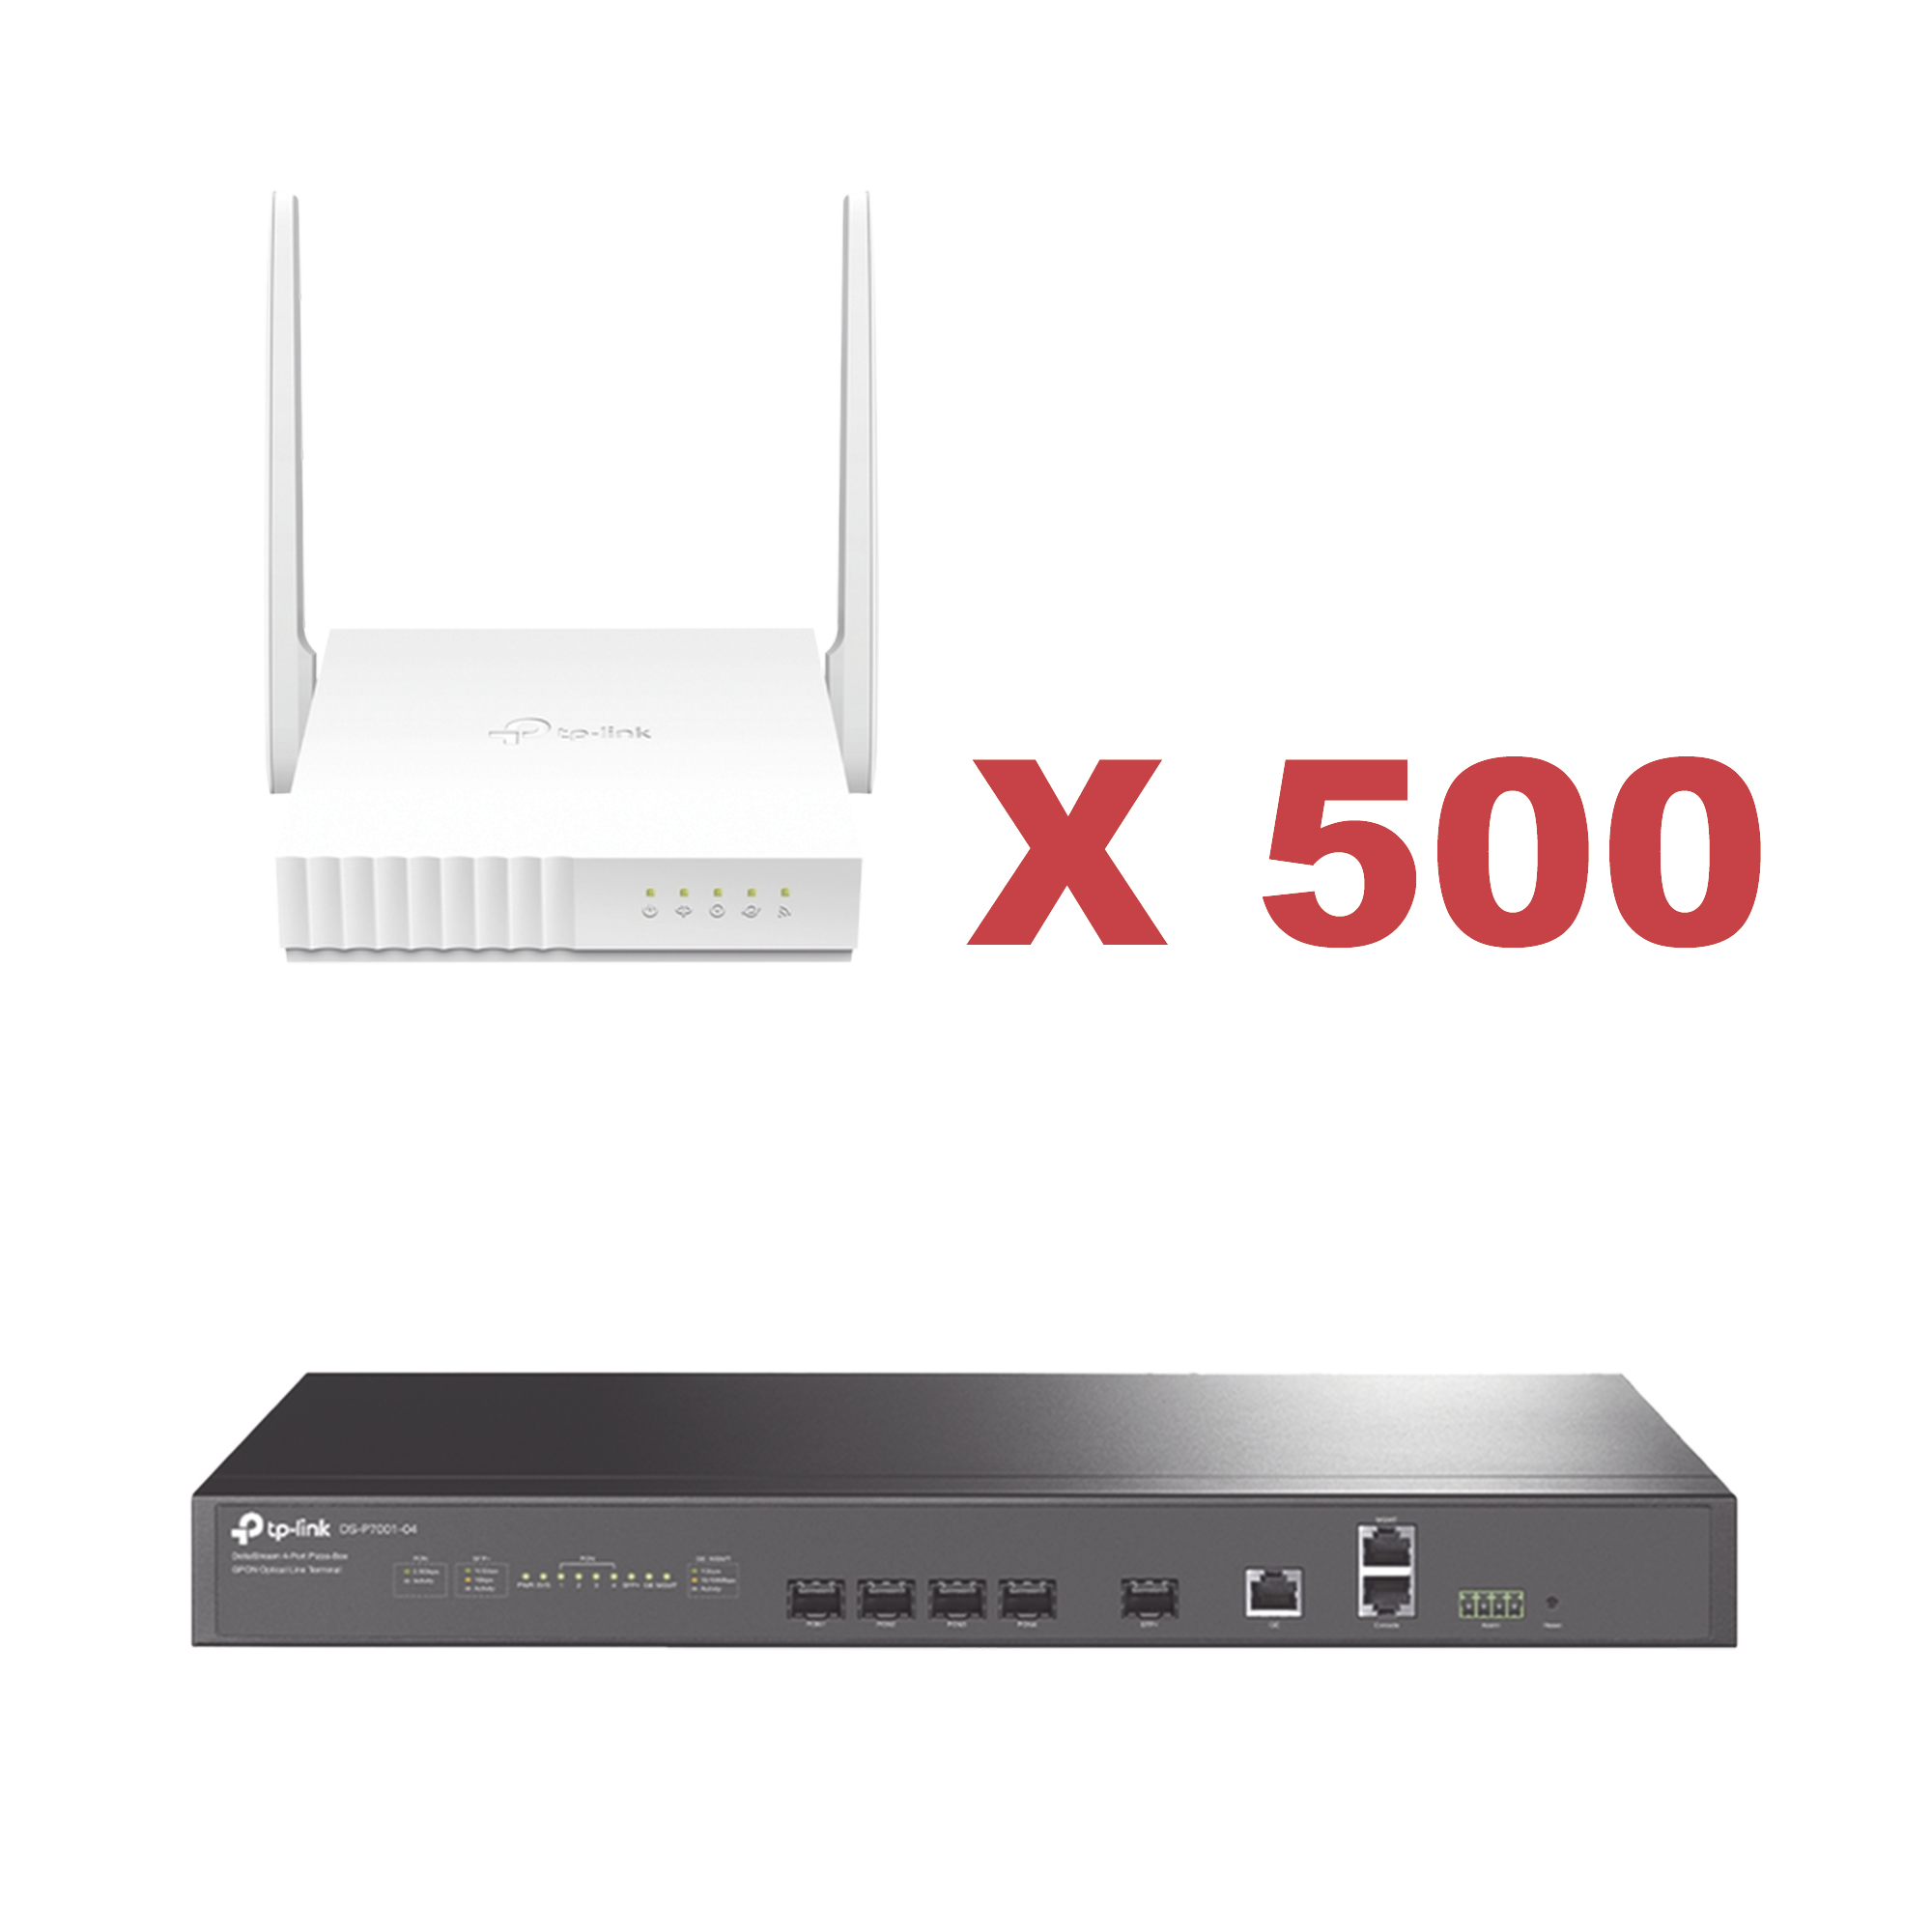 Kit para ISP`s / Paquete de 500 ONU´s Modelo XN020G3 y una OLT DS-P7001-04 de regalo